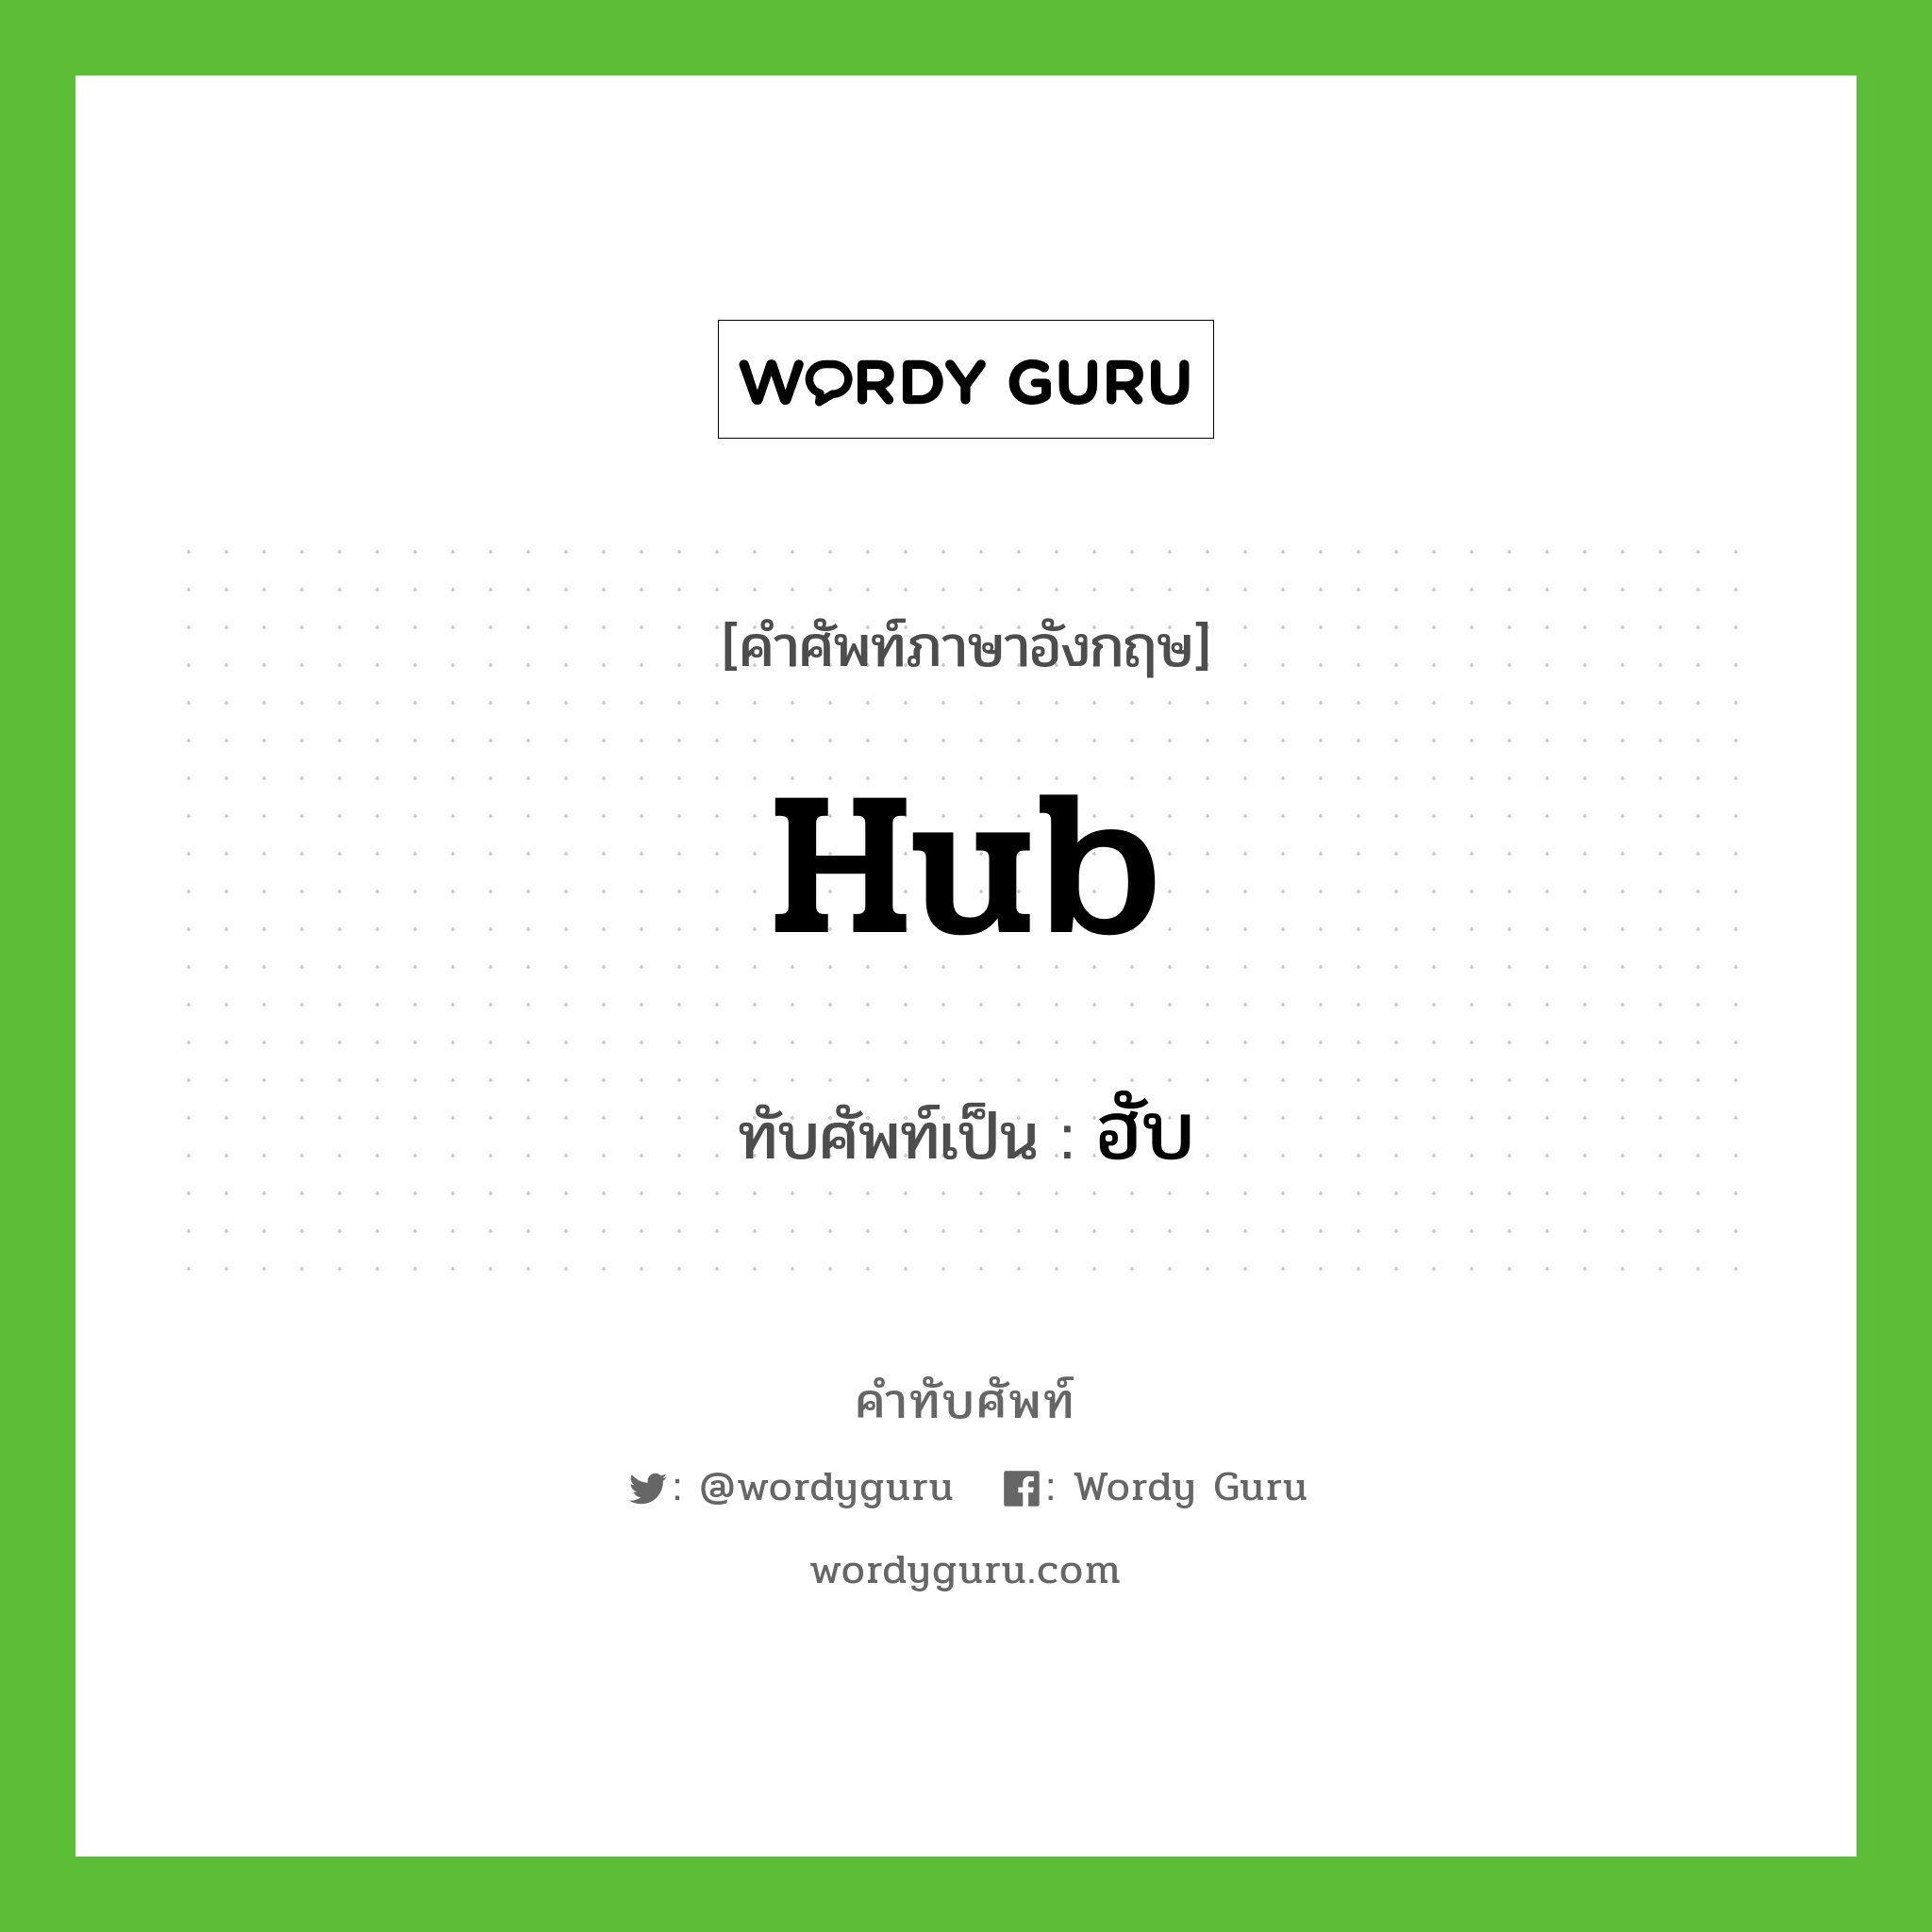 hub เขียนเป็นคำไทยว่าอะไร?, คำศัพท์ภาษาอังกฤษ hub ทับศัพท์เป็น ฮับ